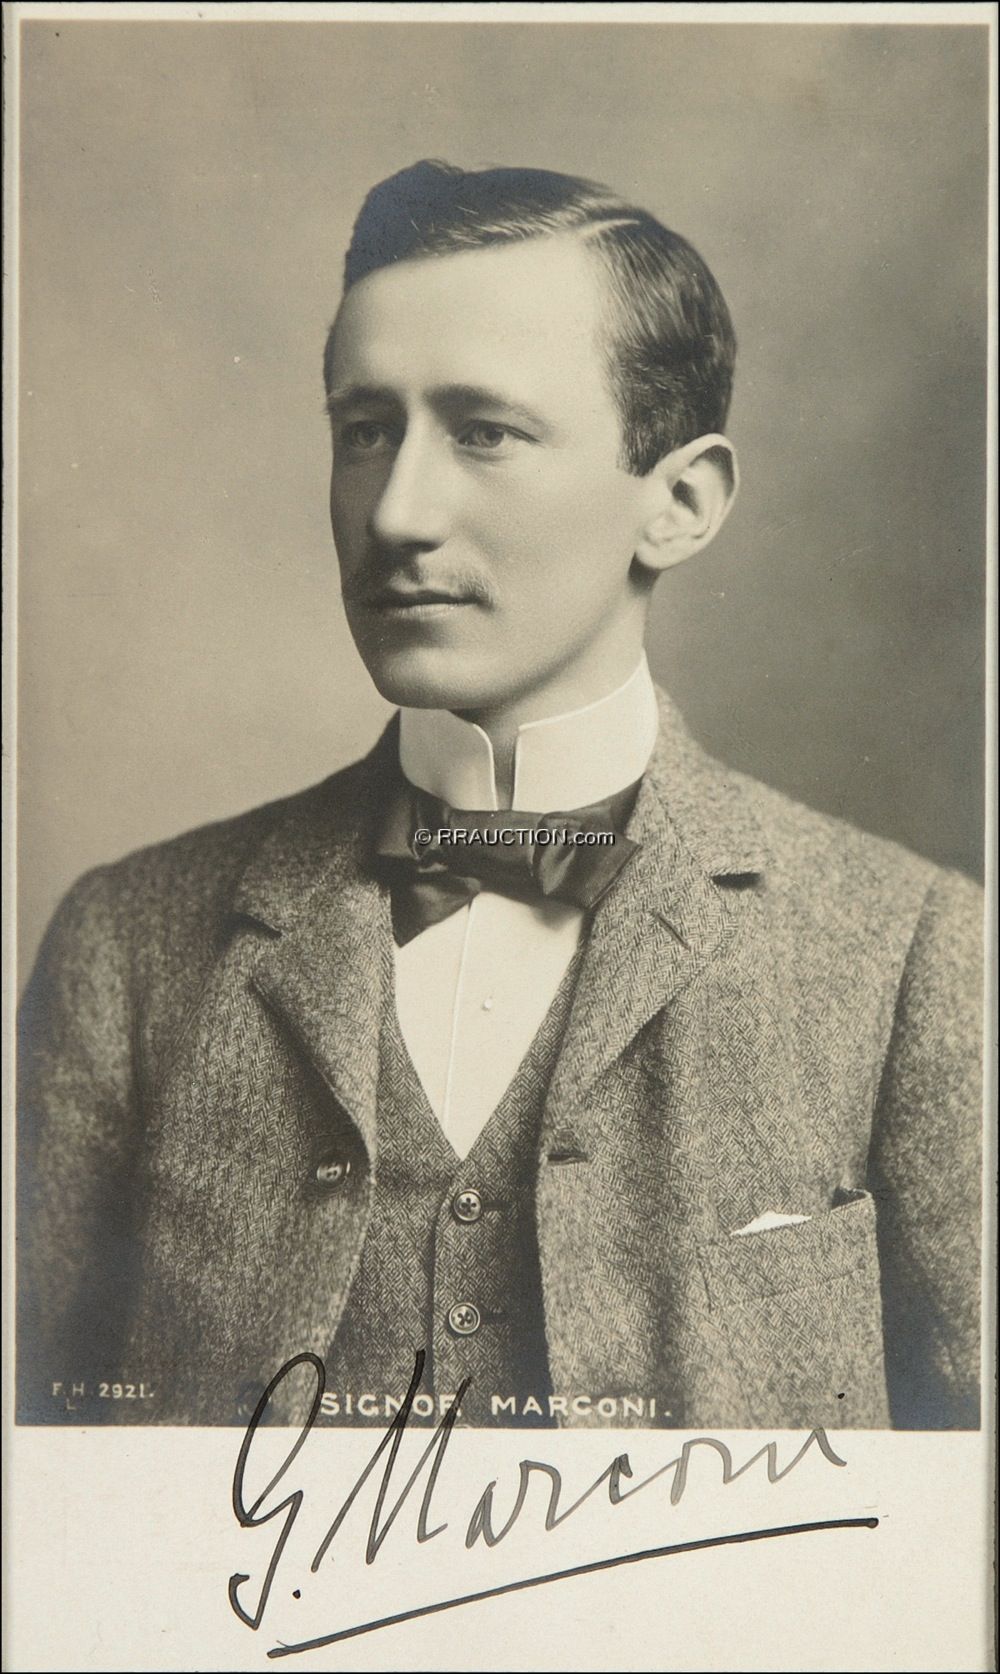 Lot #329 Guglielmo Marconi